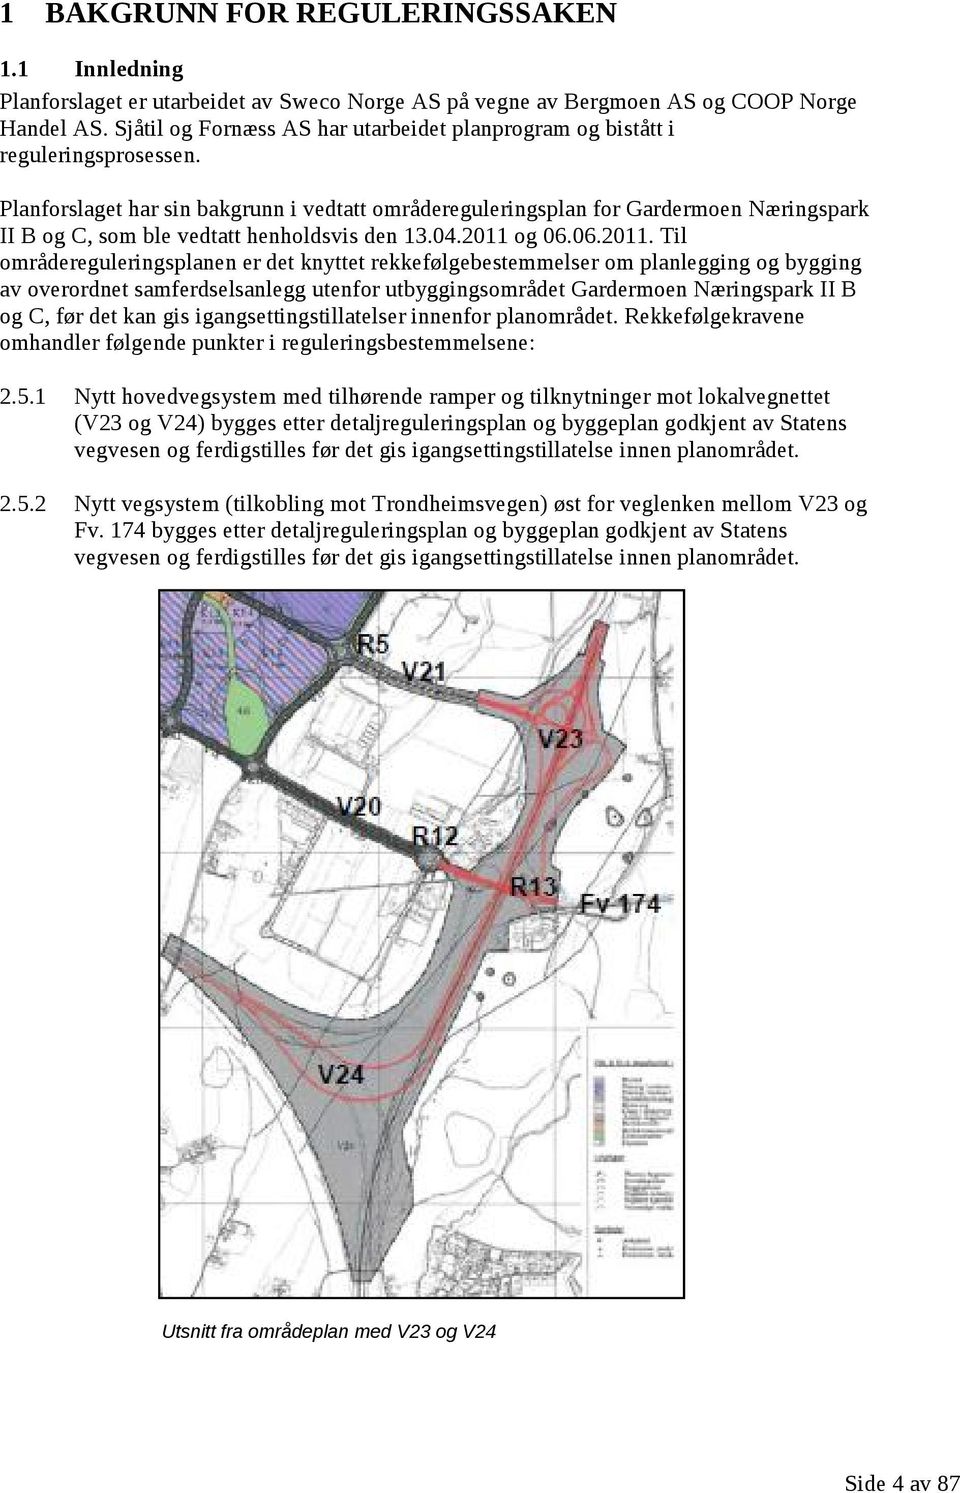 Planforslaget har sin bakgrunn i vedtatt områdereguleringsplan for Gardermoen Næringspark II B og C, som ble vedtatt henholdsvis den 13.04.2011 